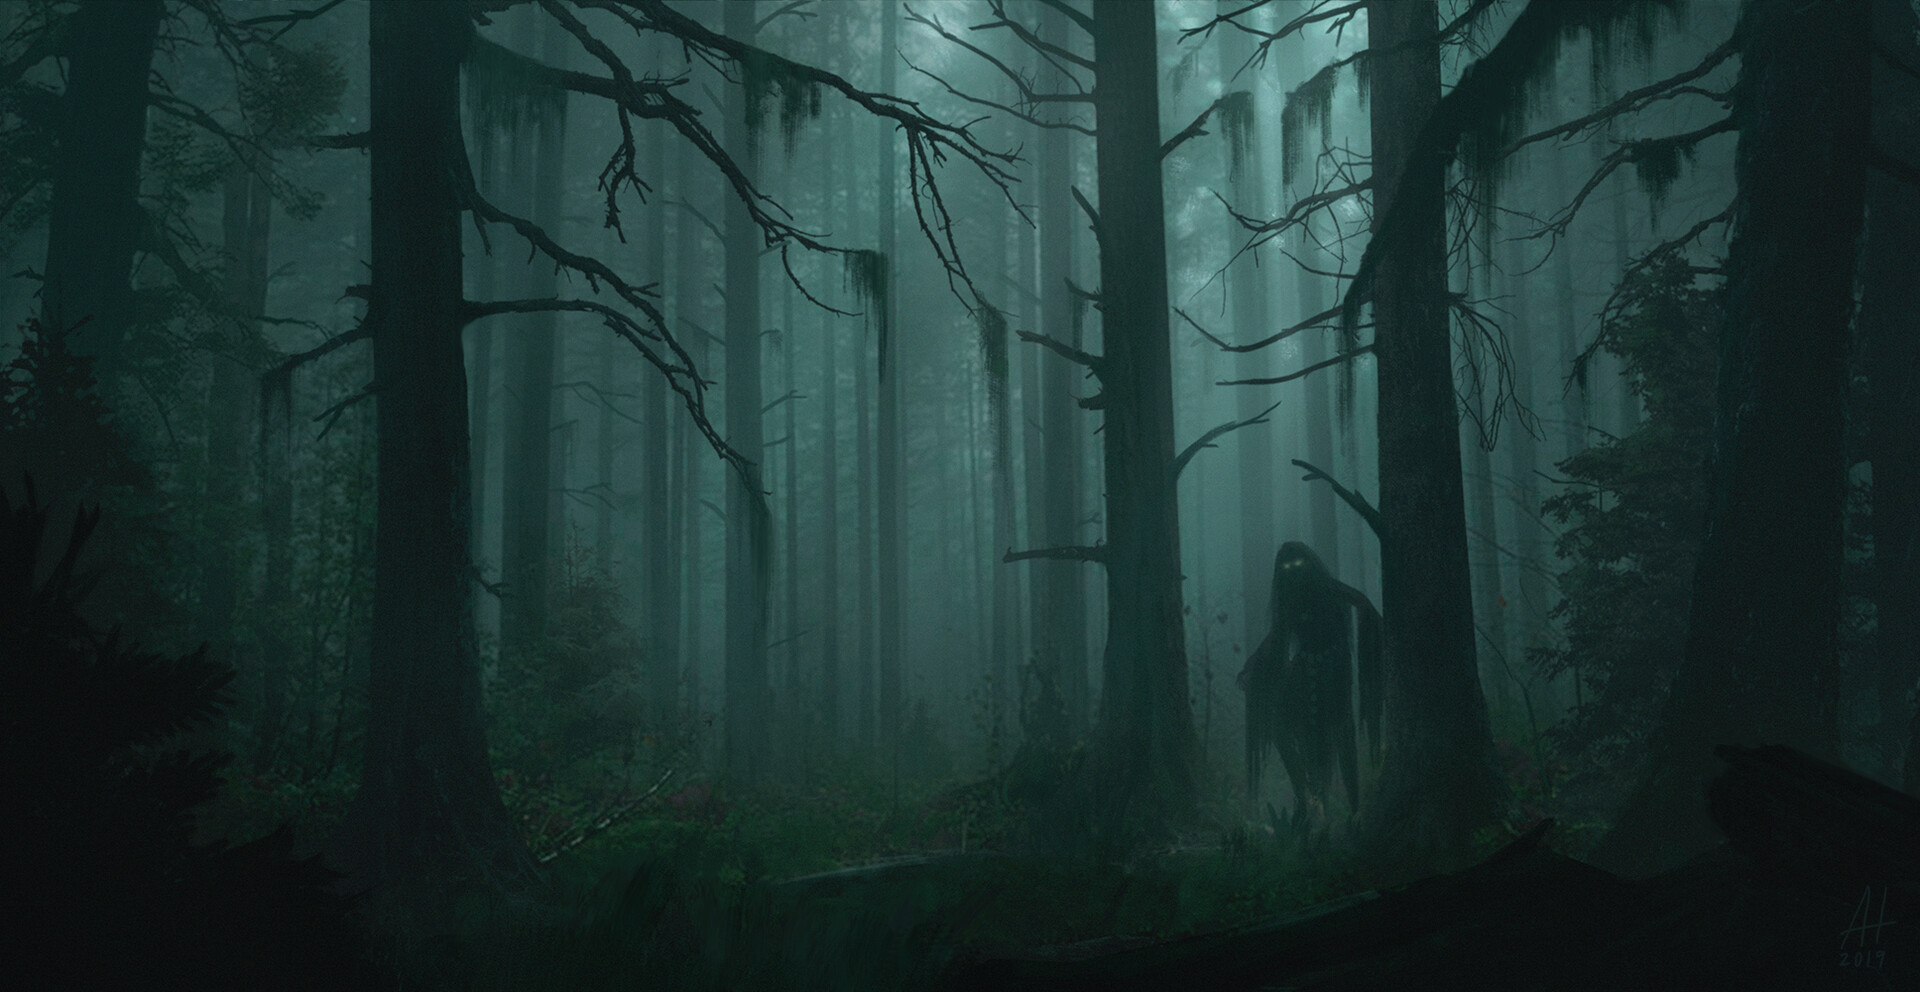 Ancient forest, by Anton Holmqvist : ImaginaryForests